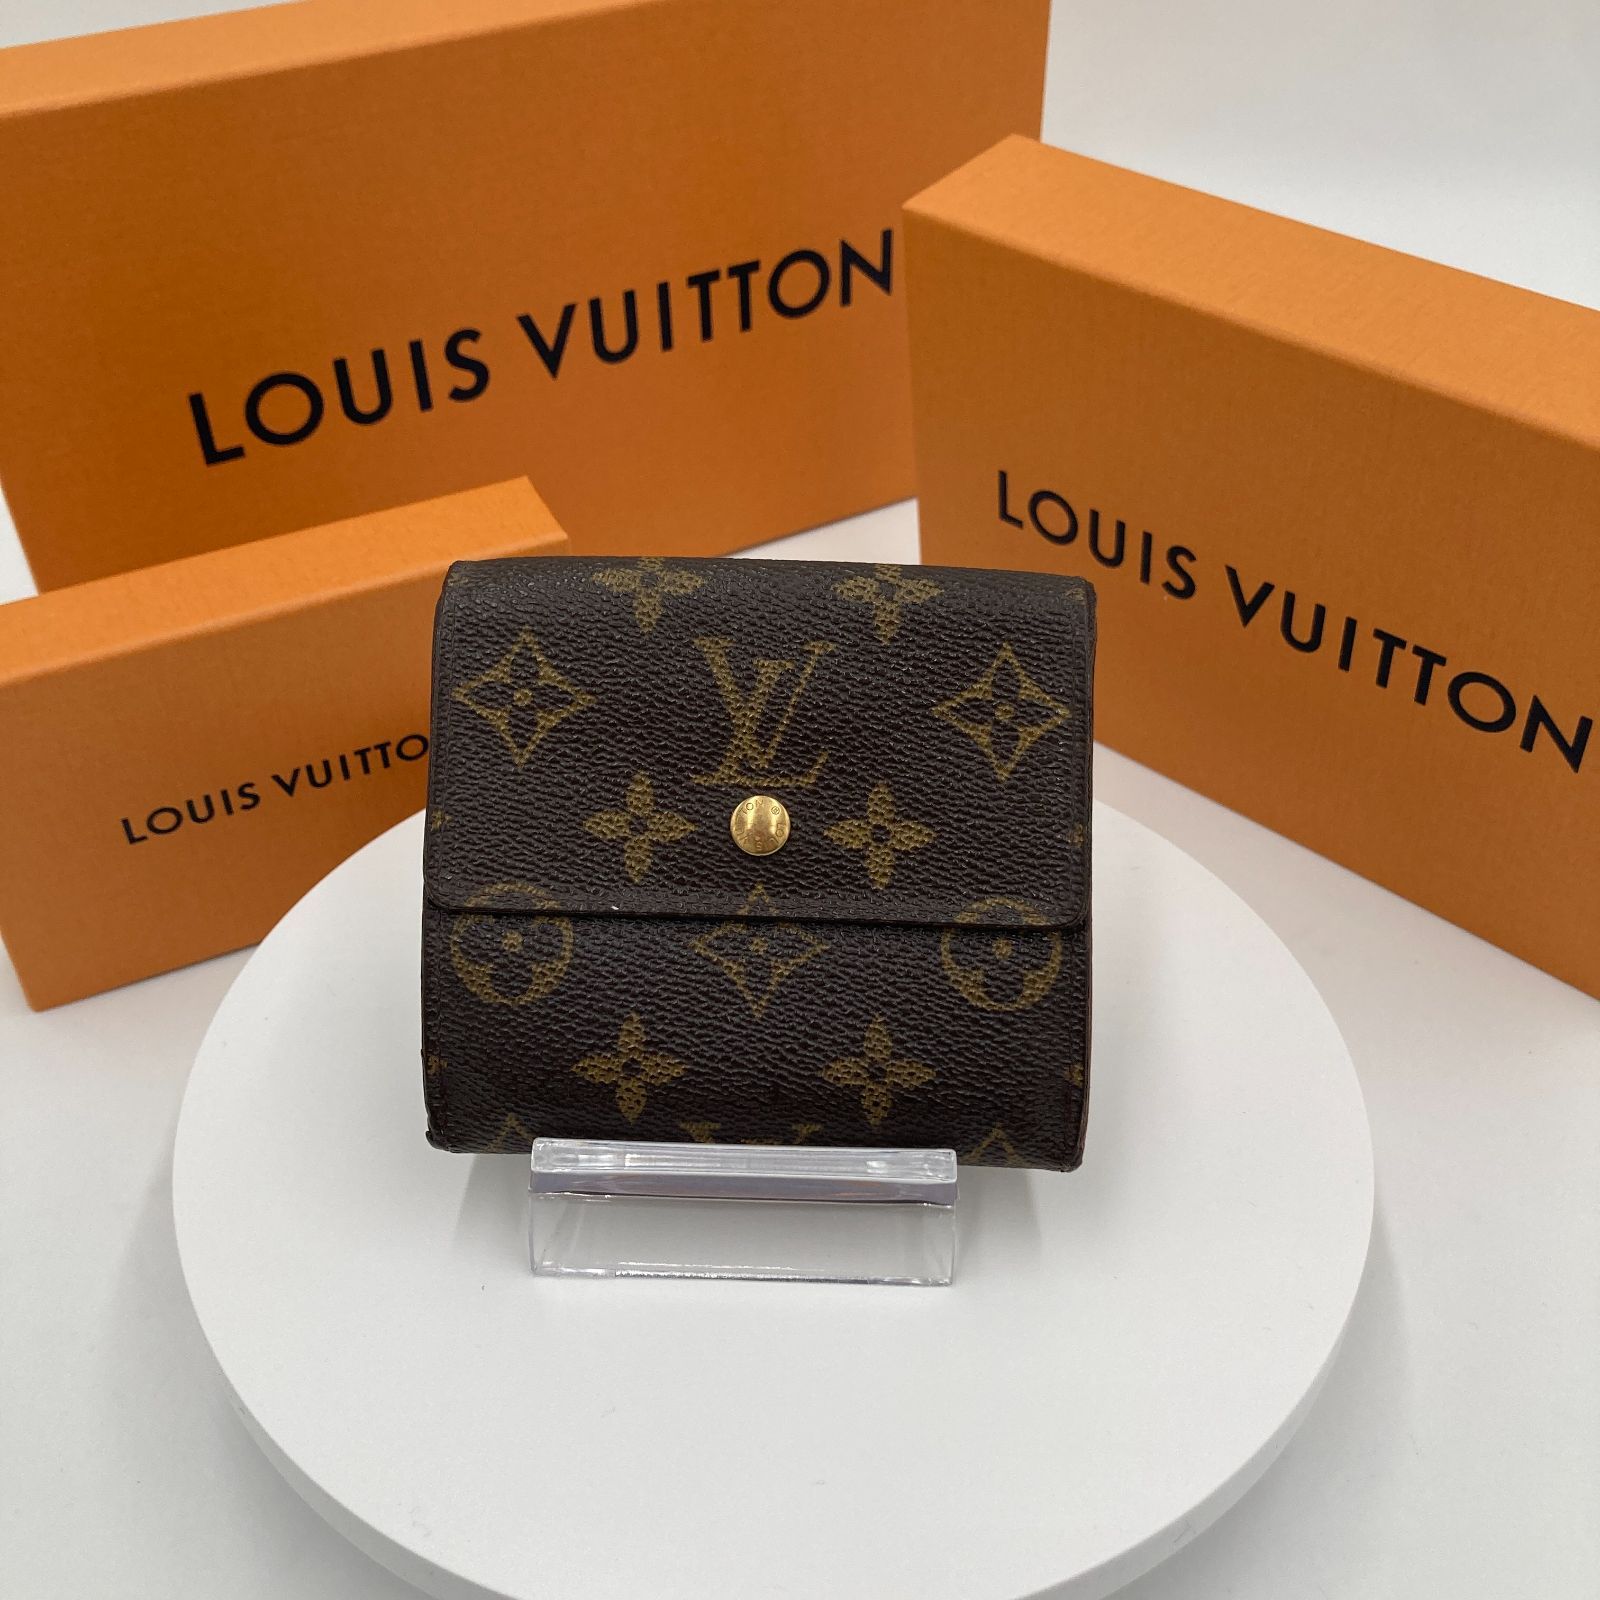 Louis Vuitton 財布ルイ・ヴィトン モノグラム 折財布 Wホック財布 